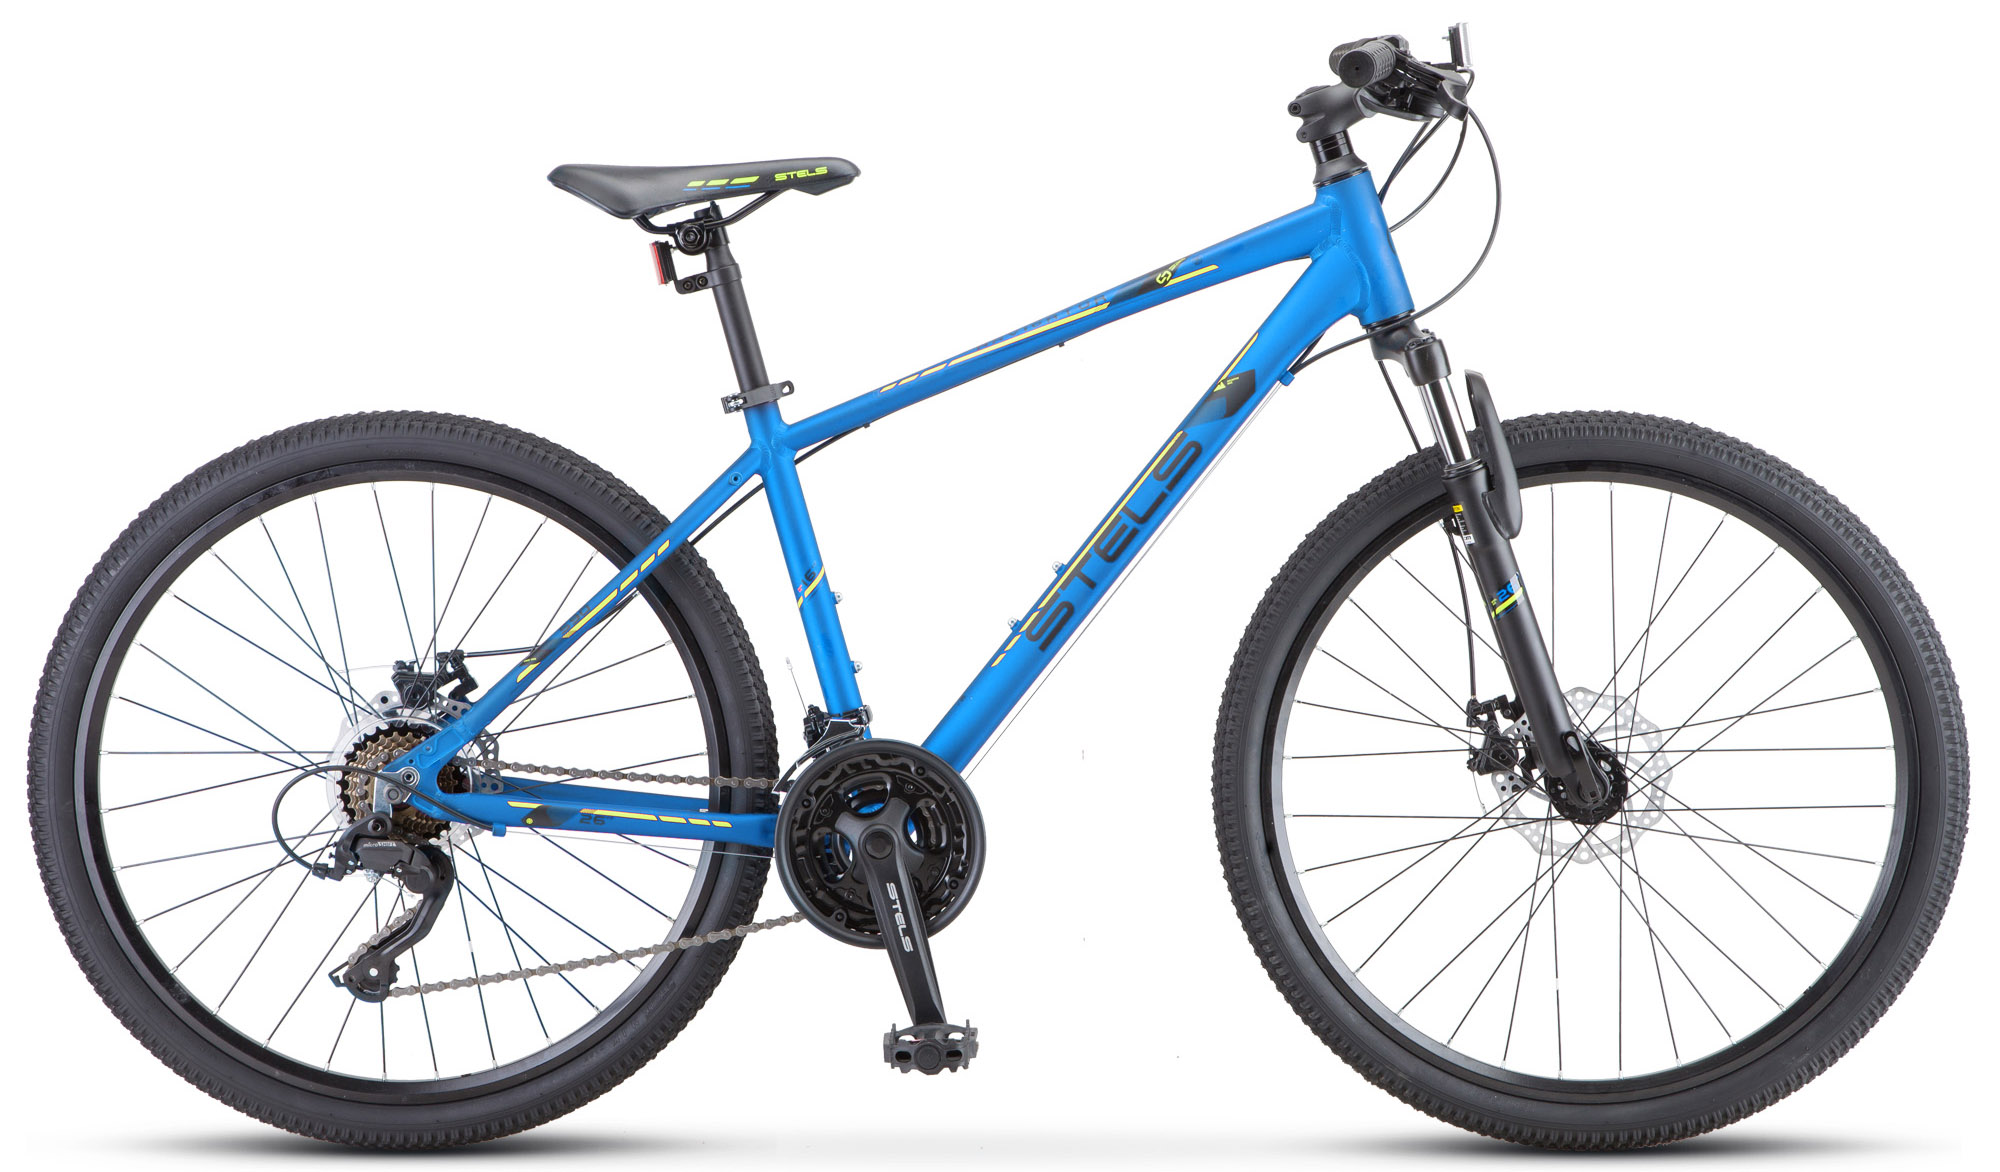  Отзывы о Горном велосипеде Stels горный велосипед Stels Navigator 590 MD K010 2020 2020